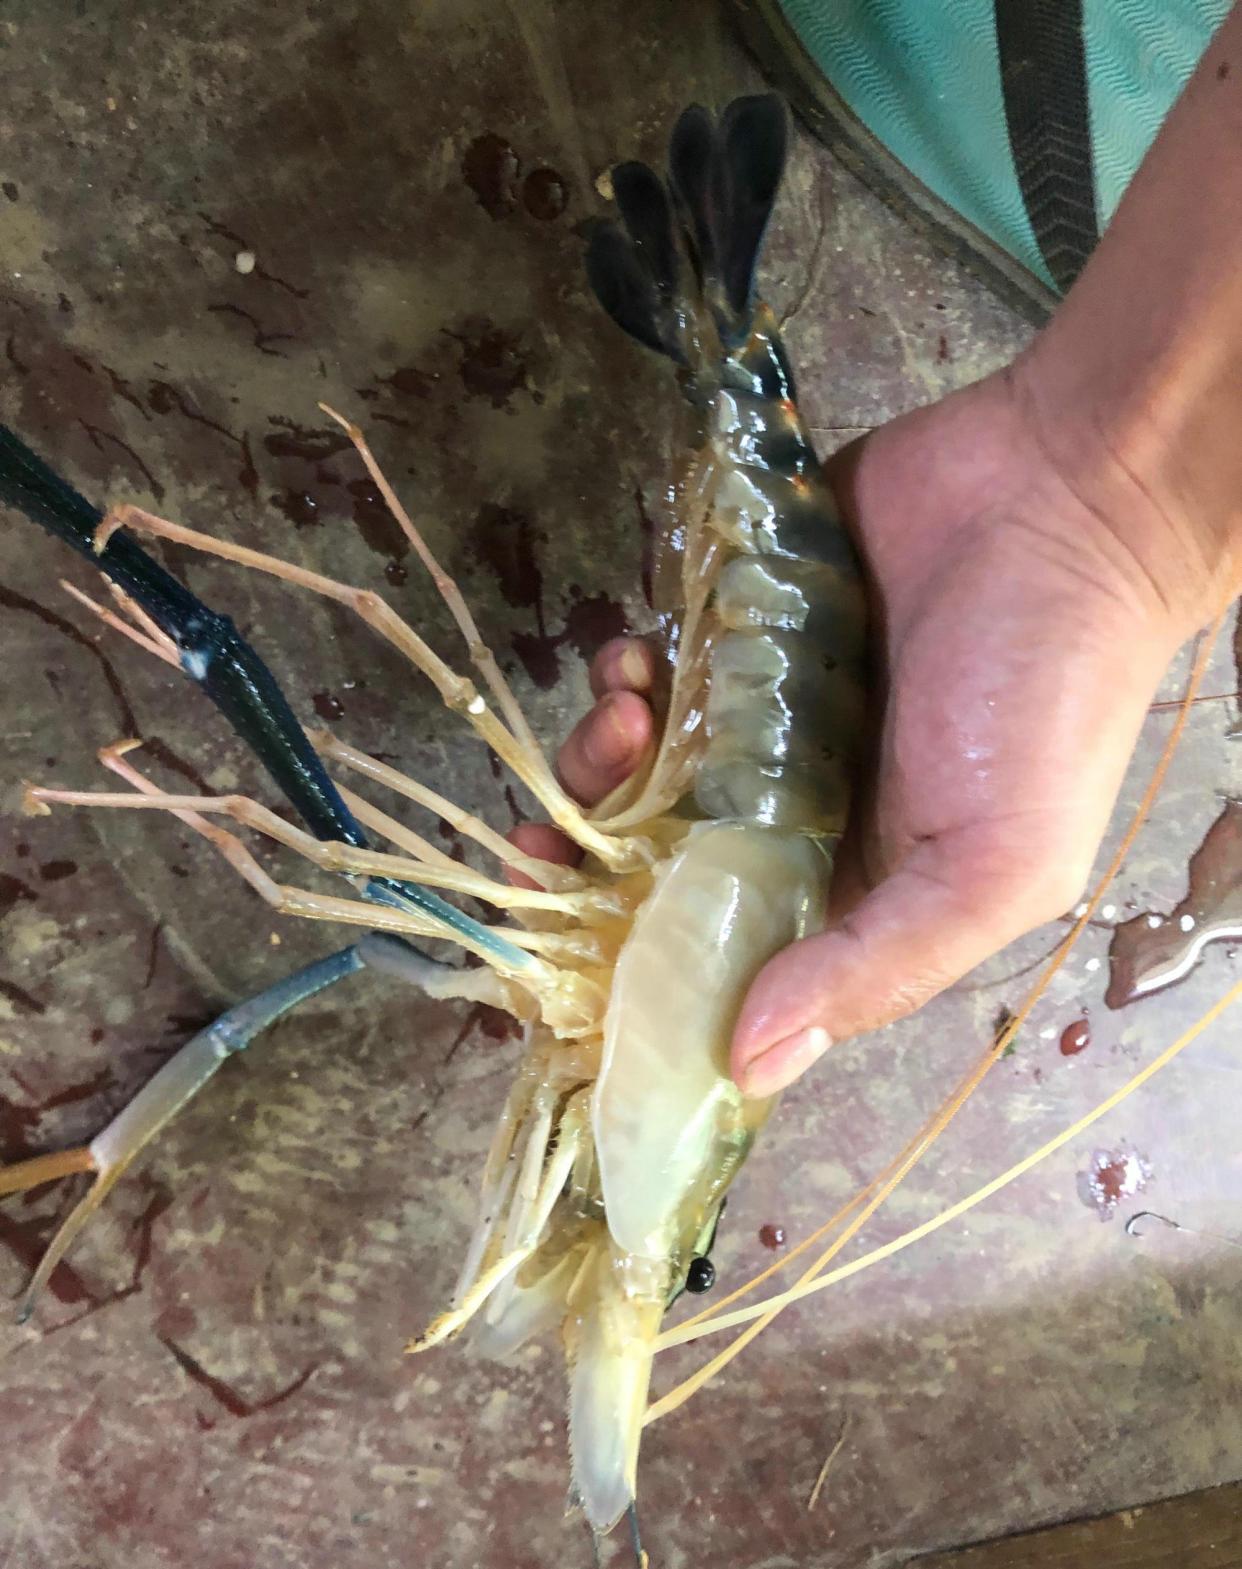 广州钓鱼人珠江钓起罕见大虾,而且一肚子虾籽